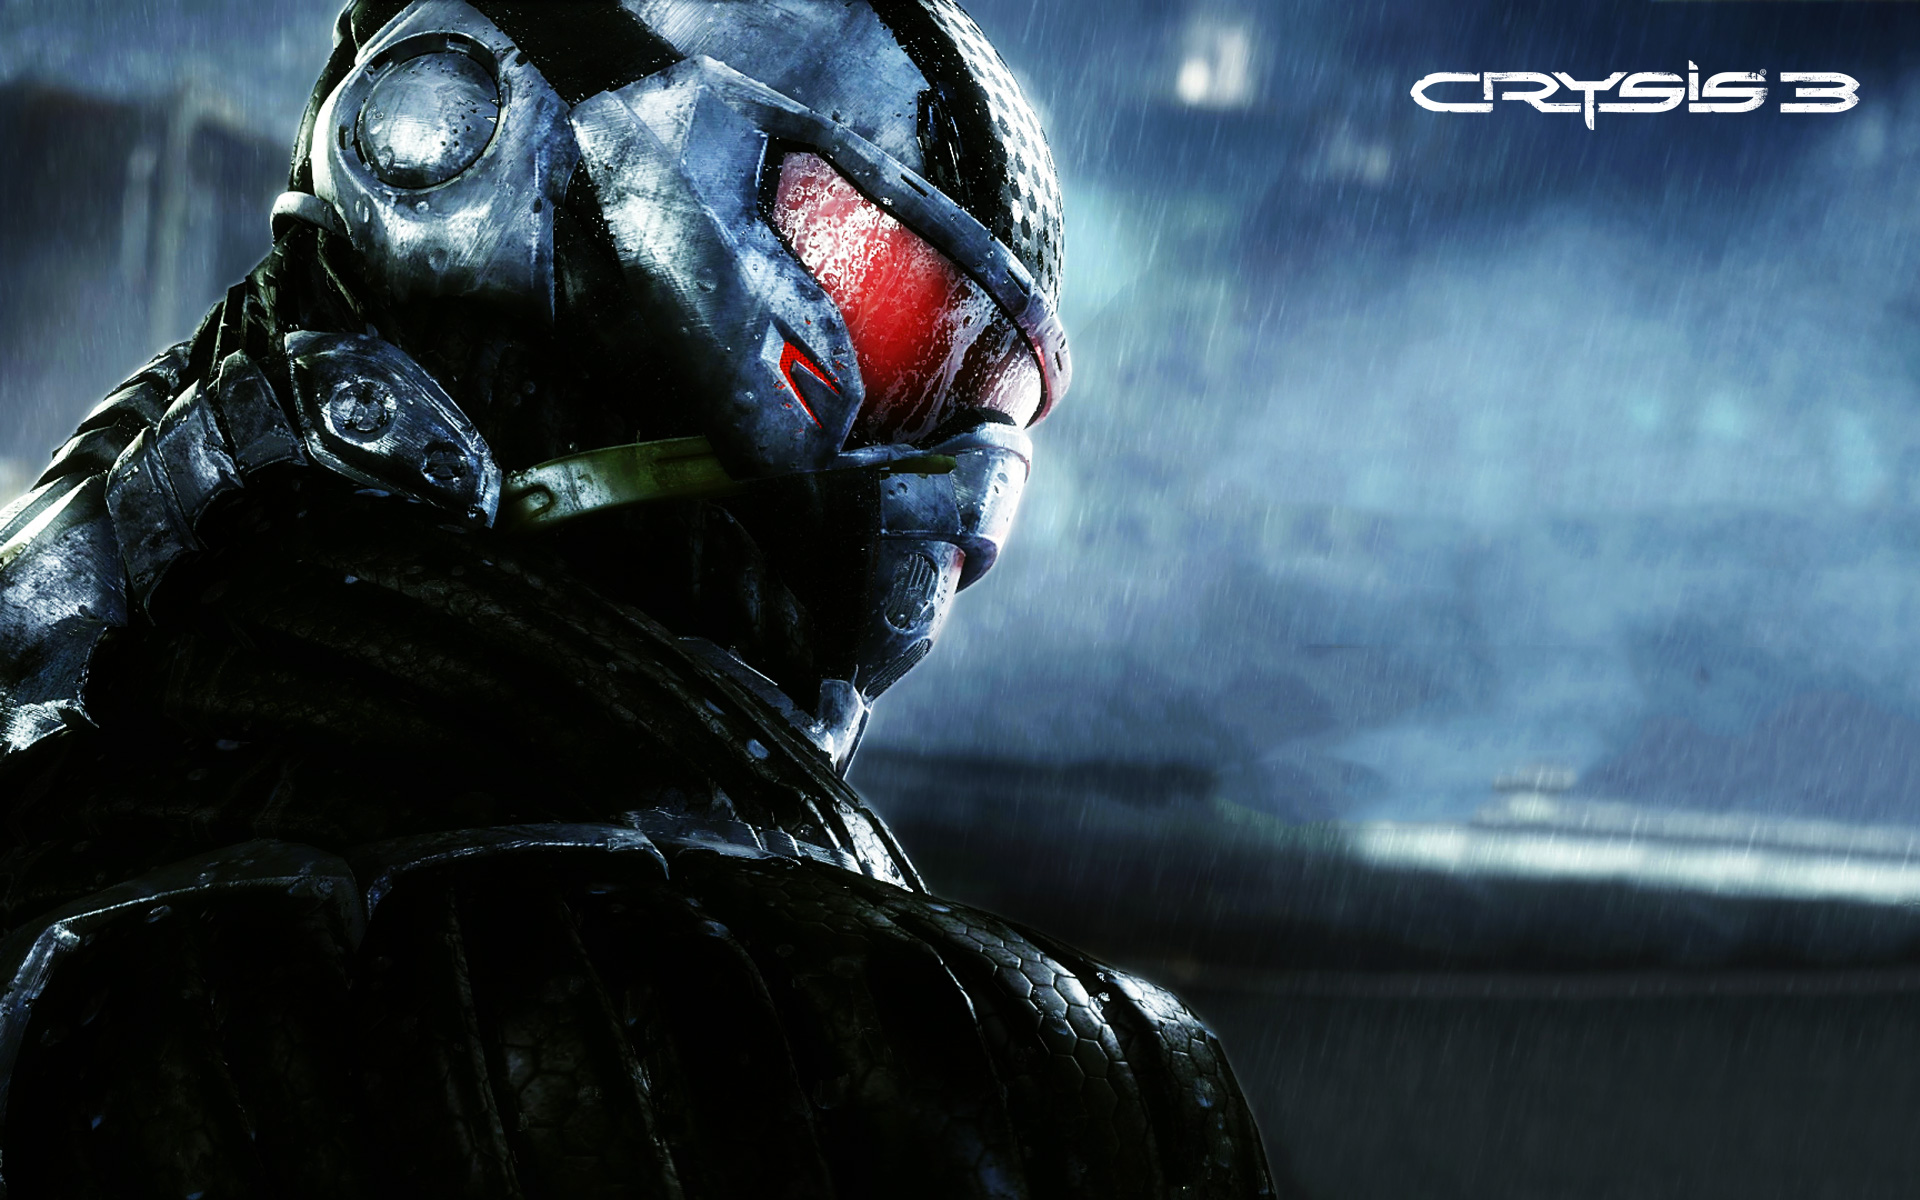 Crysis 3 game (Wallpaper > Crysis 3)